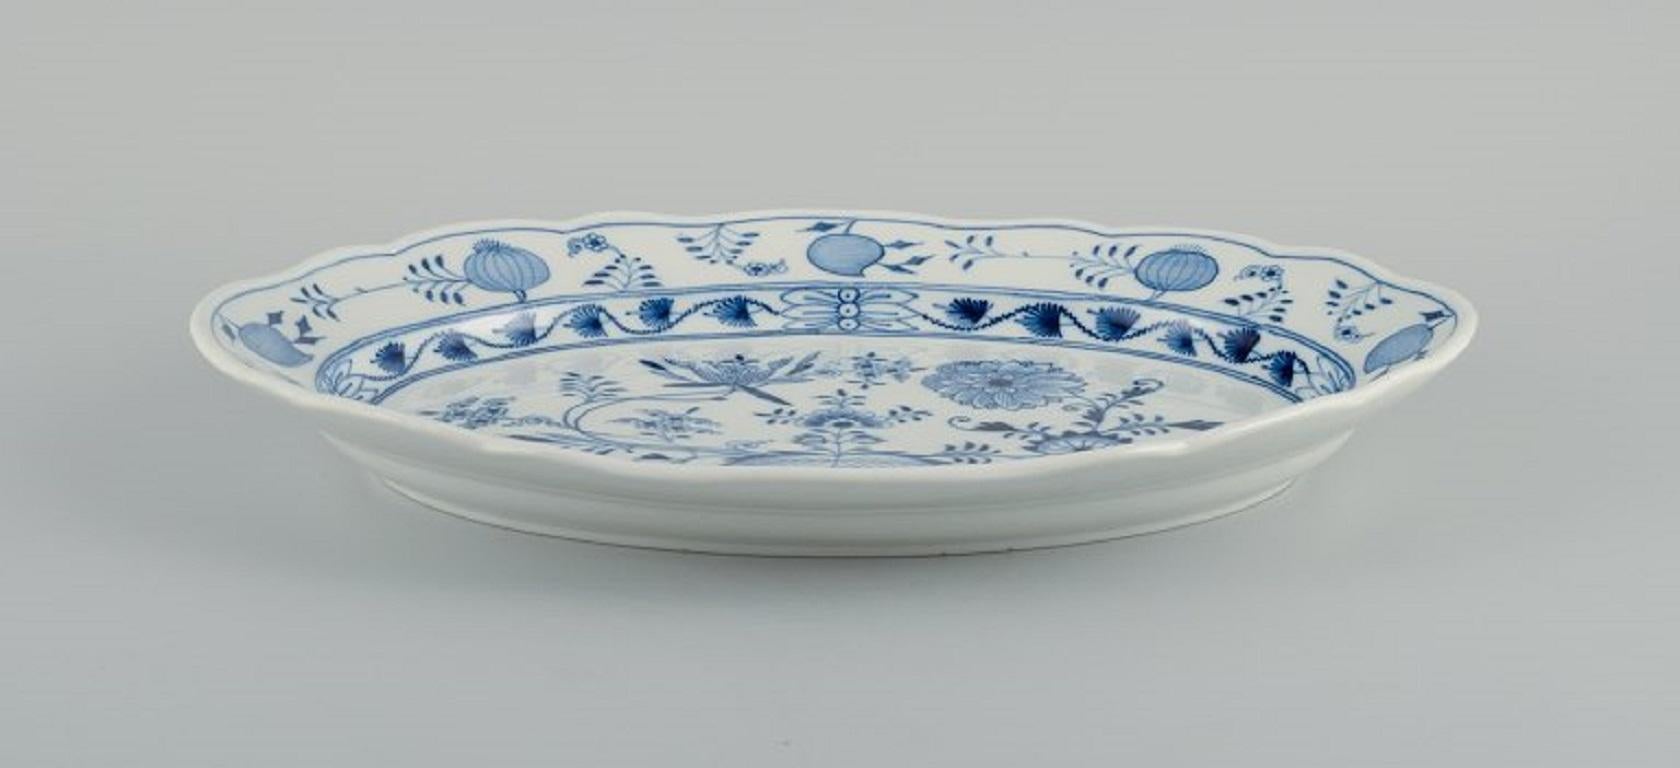 Meissen, plato ovalado Cebolla Azul en porcelana.
hacia 1900.
Primera calidad de fábrica.
Perfecto estado.
Marcado.
Dimensiones: L 41,5 x P 30,5 x Alt 6,0 cm.